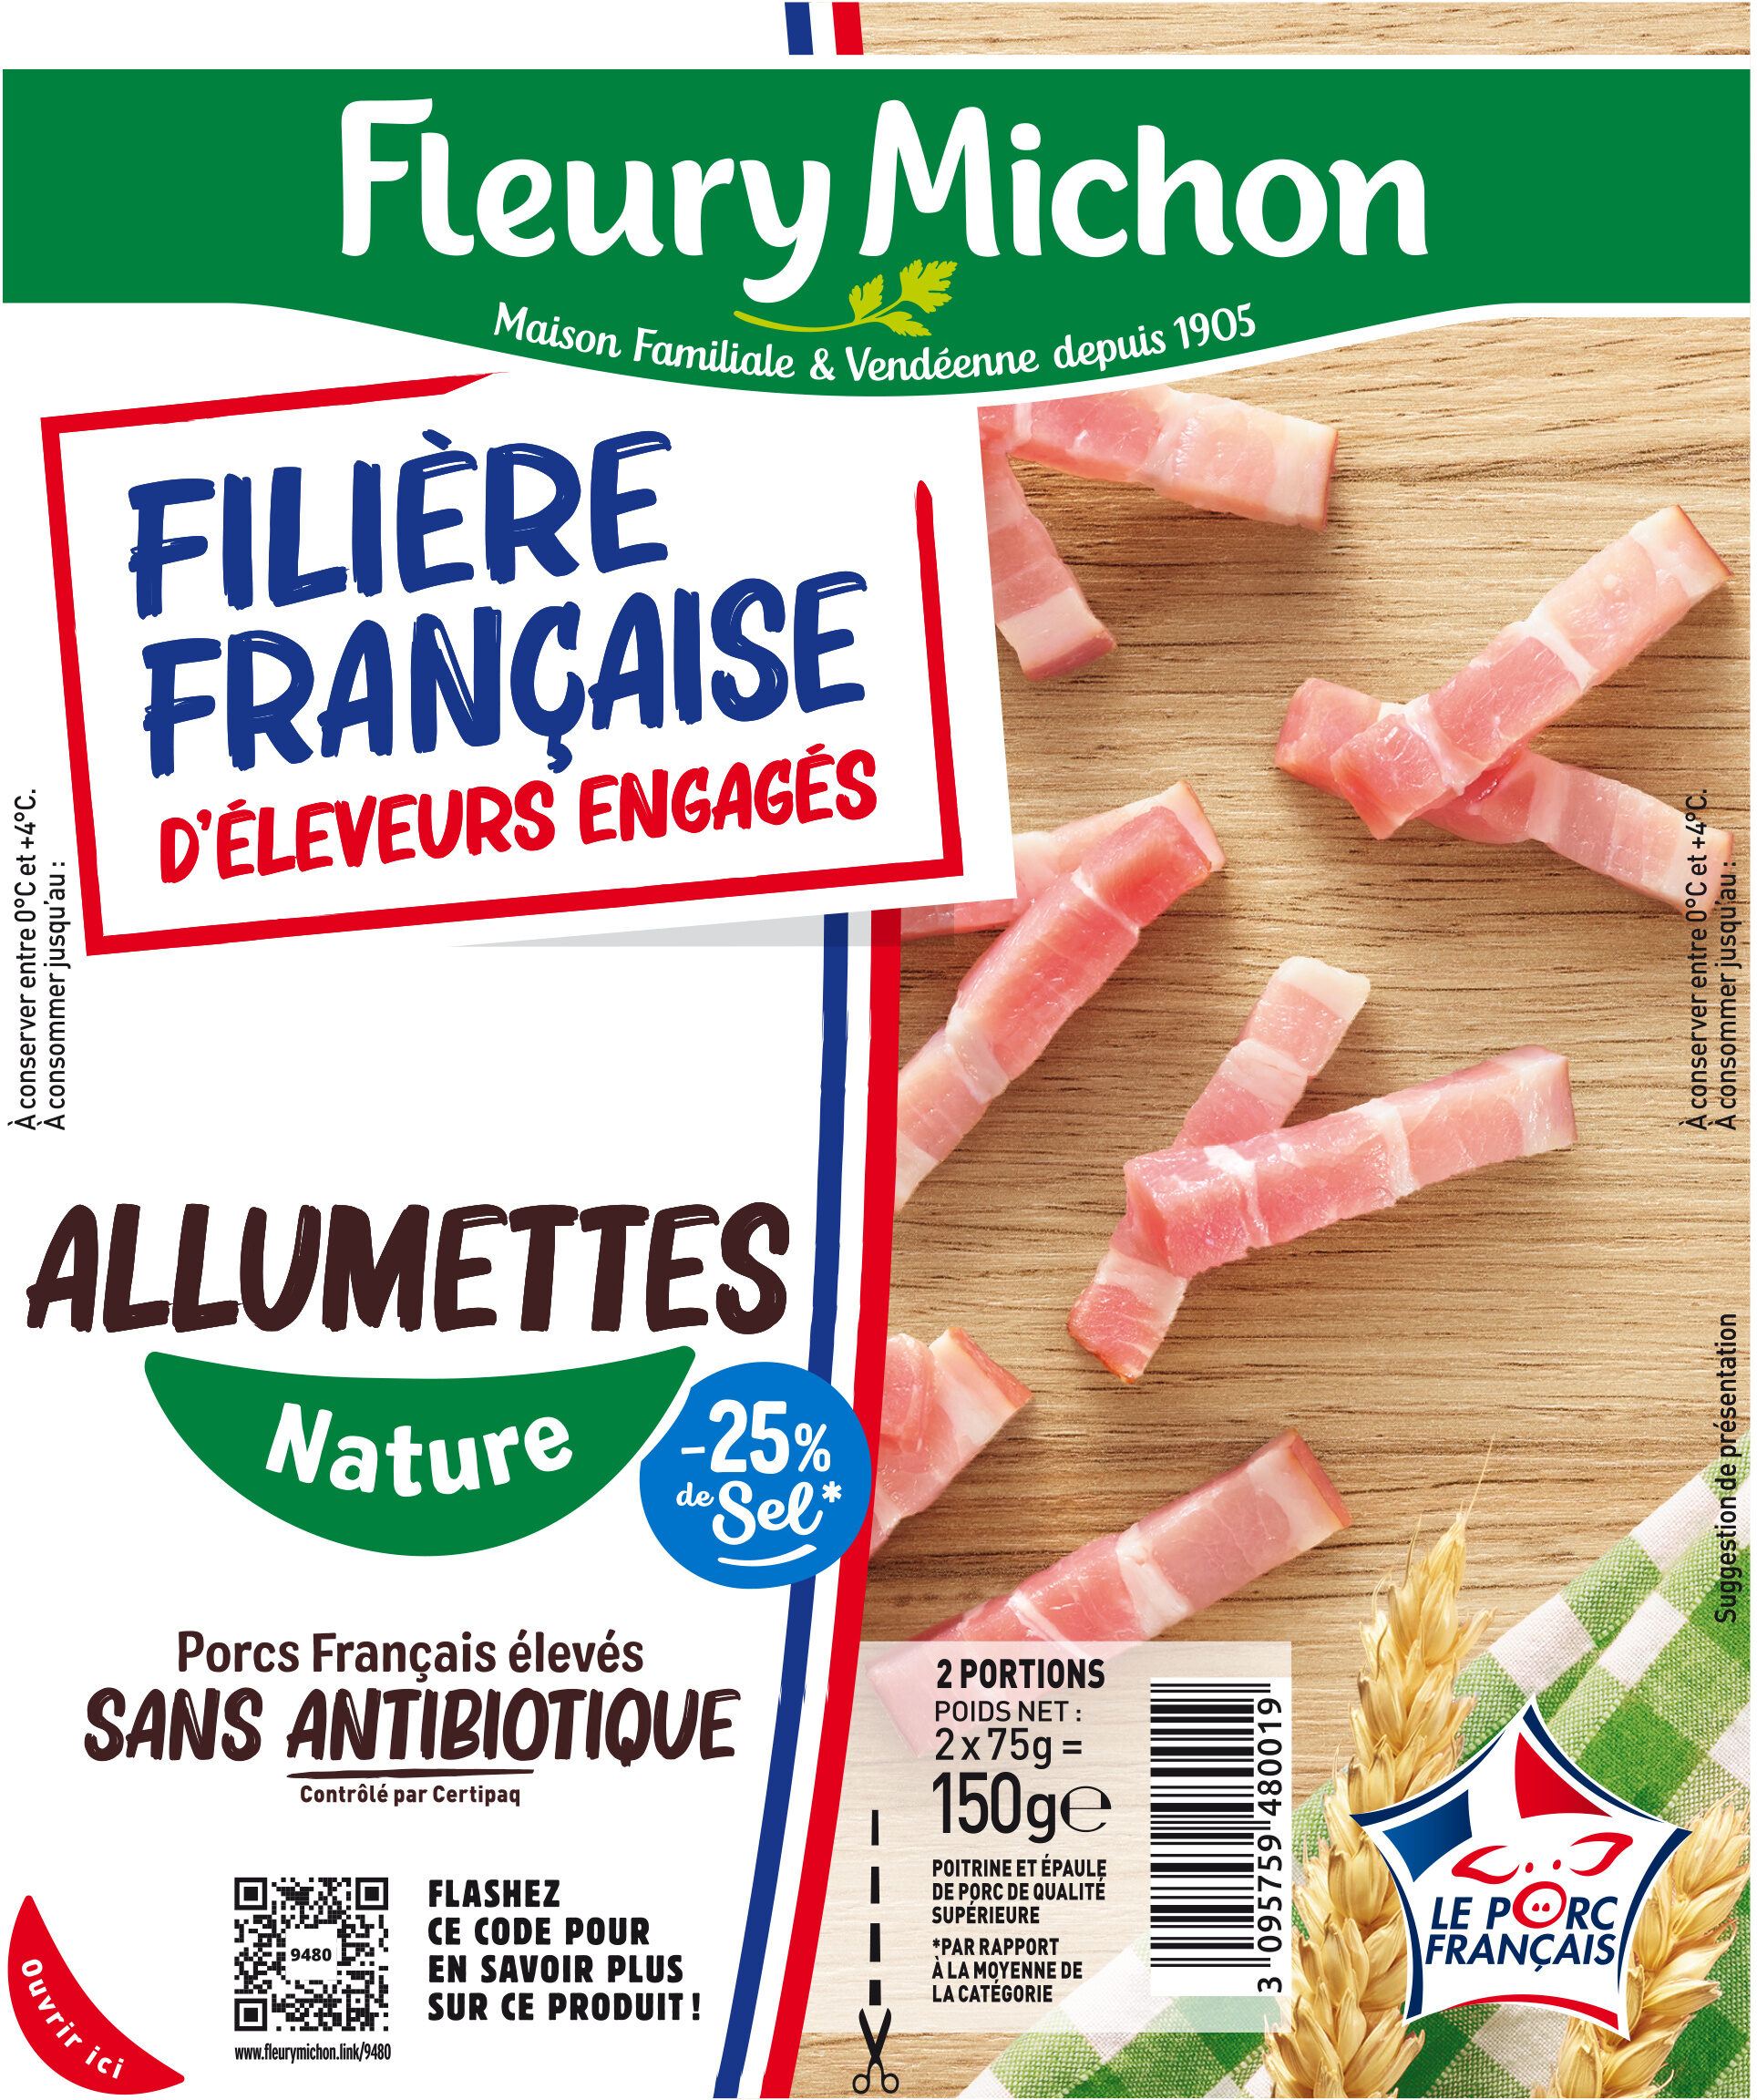 Allumettes - Nature -25% de sel* - FILIERE FRANCAISE D'ELEVEURS ENGAGES - Producto - fr